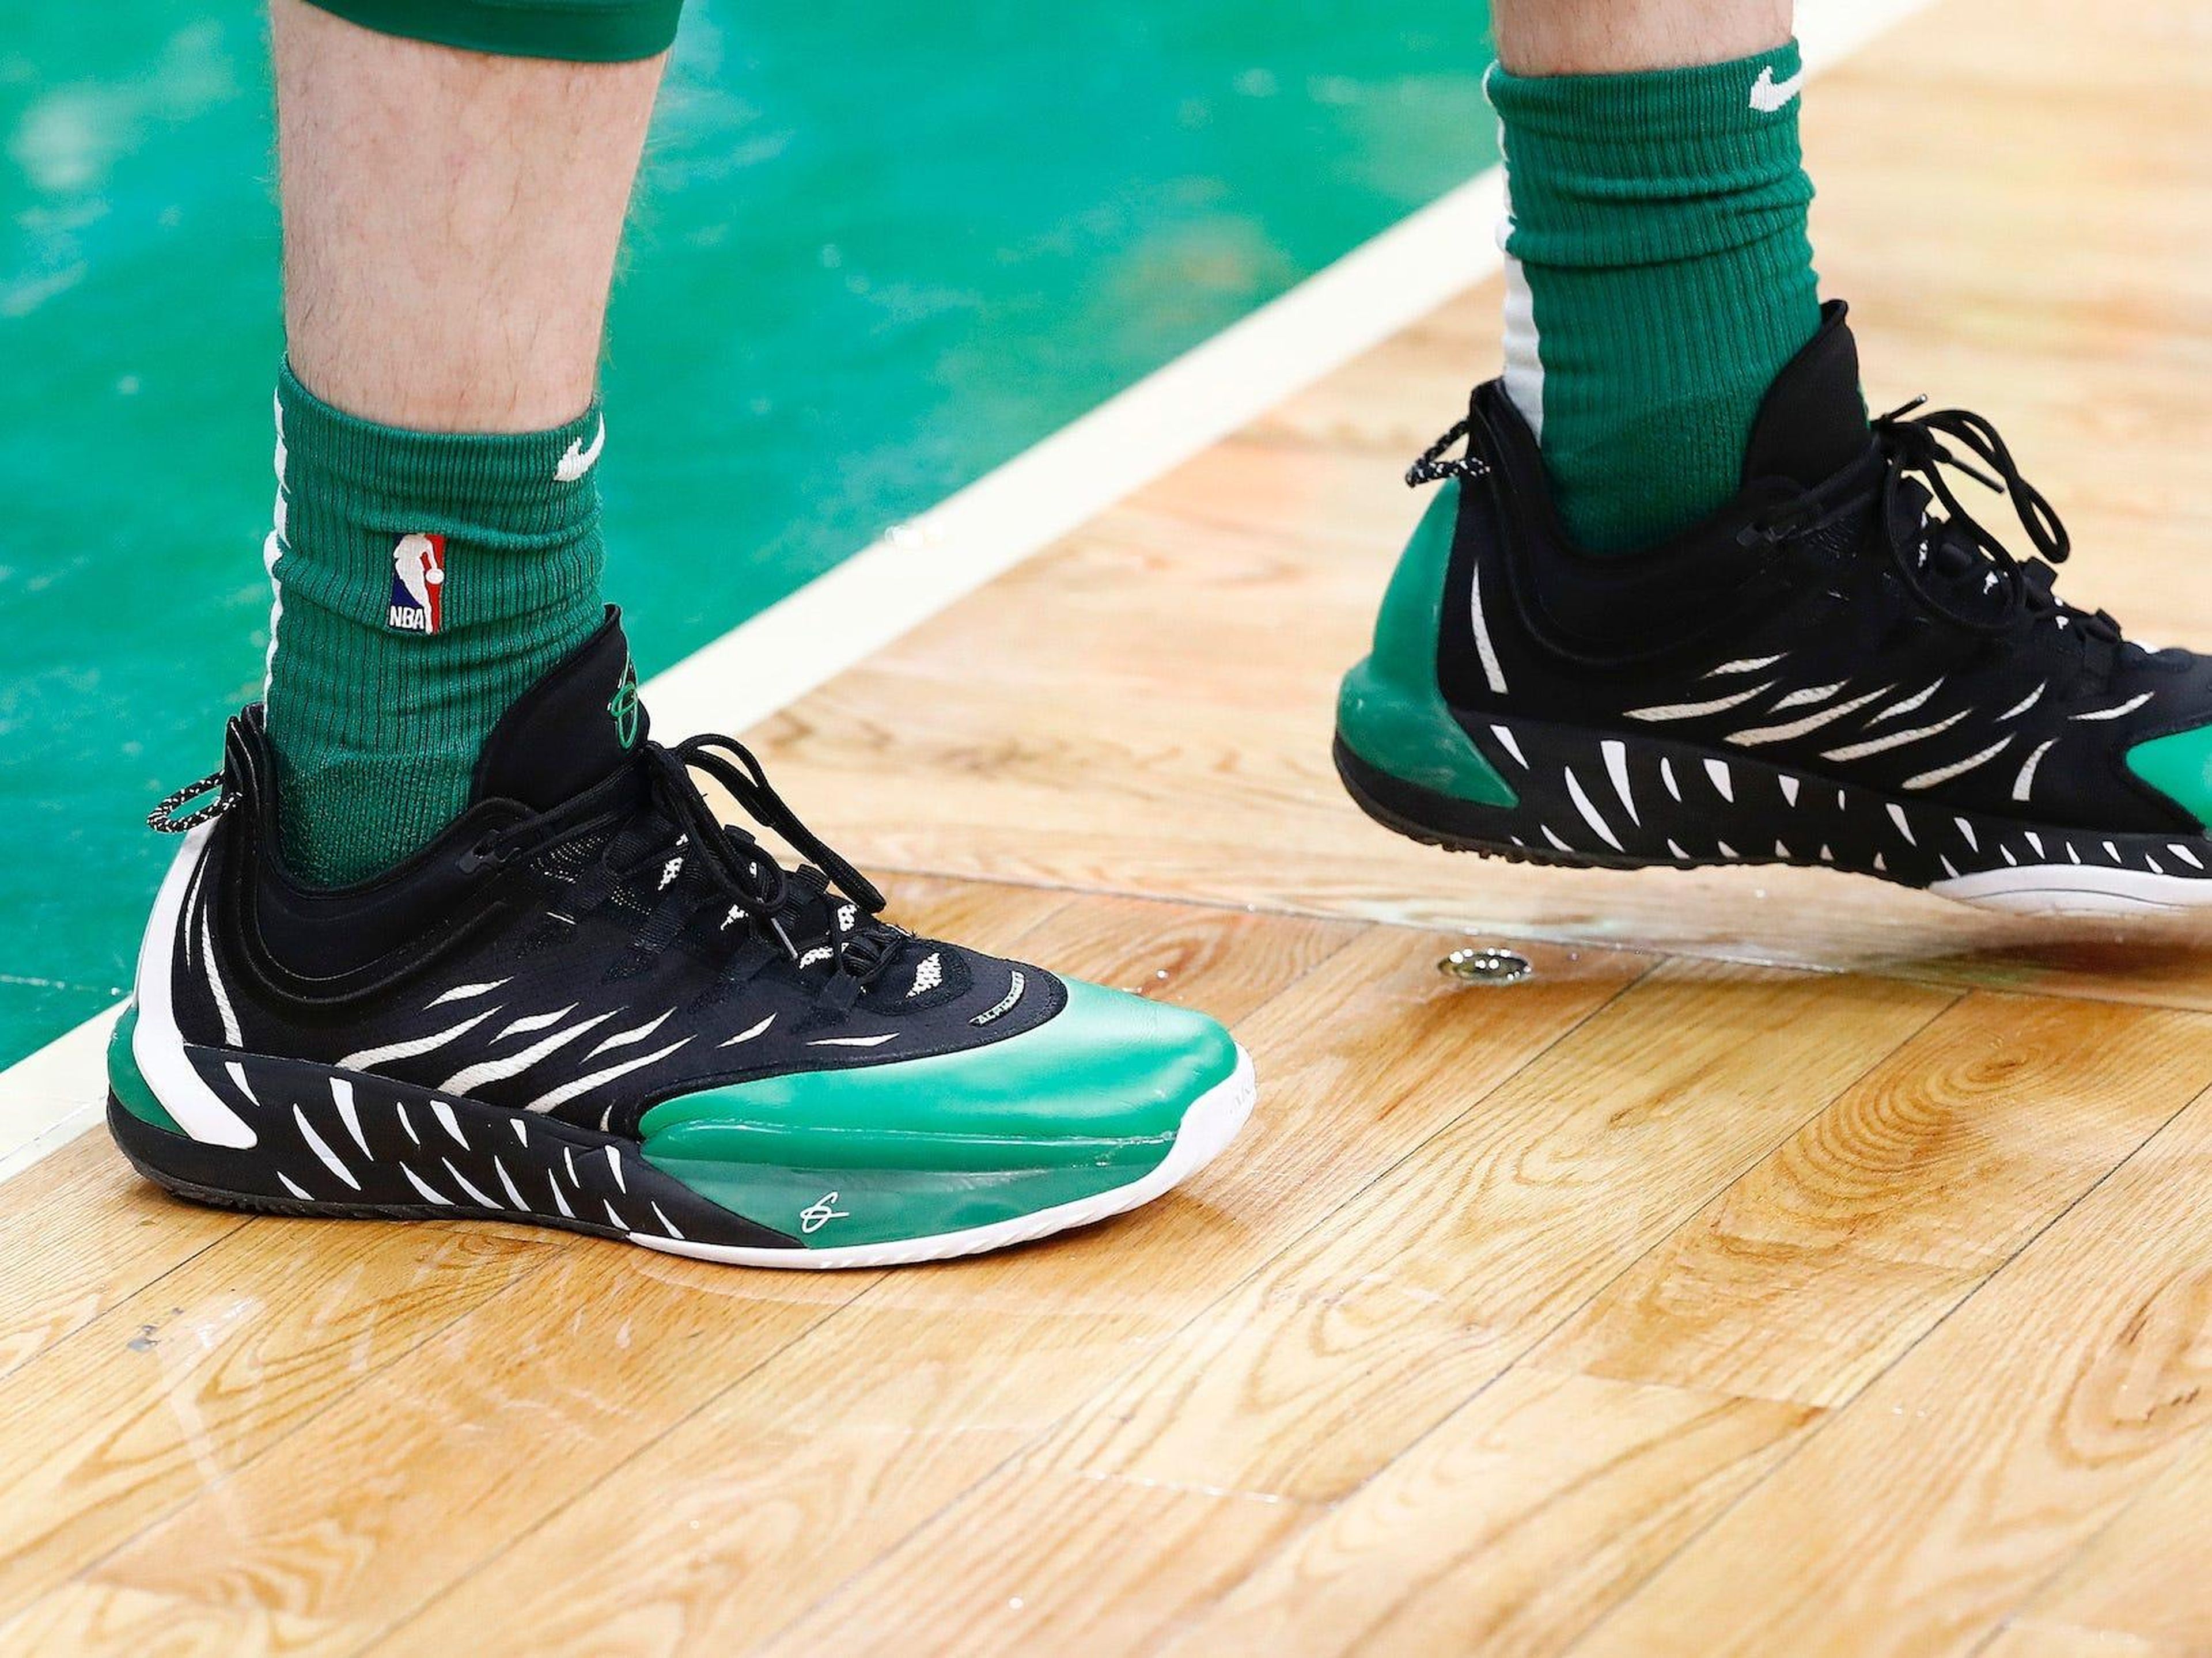 Gordon Hayward, de los Boston Celtics llevando unas zapatillas Anta antes del partido entre los Boston Celtics y Oklahoma City Thunder en el TD Garden el 8 de marzo de 2020 en Boston, Massachusetts.